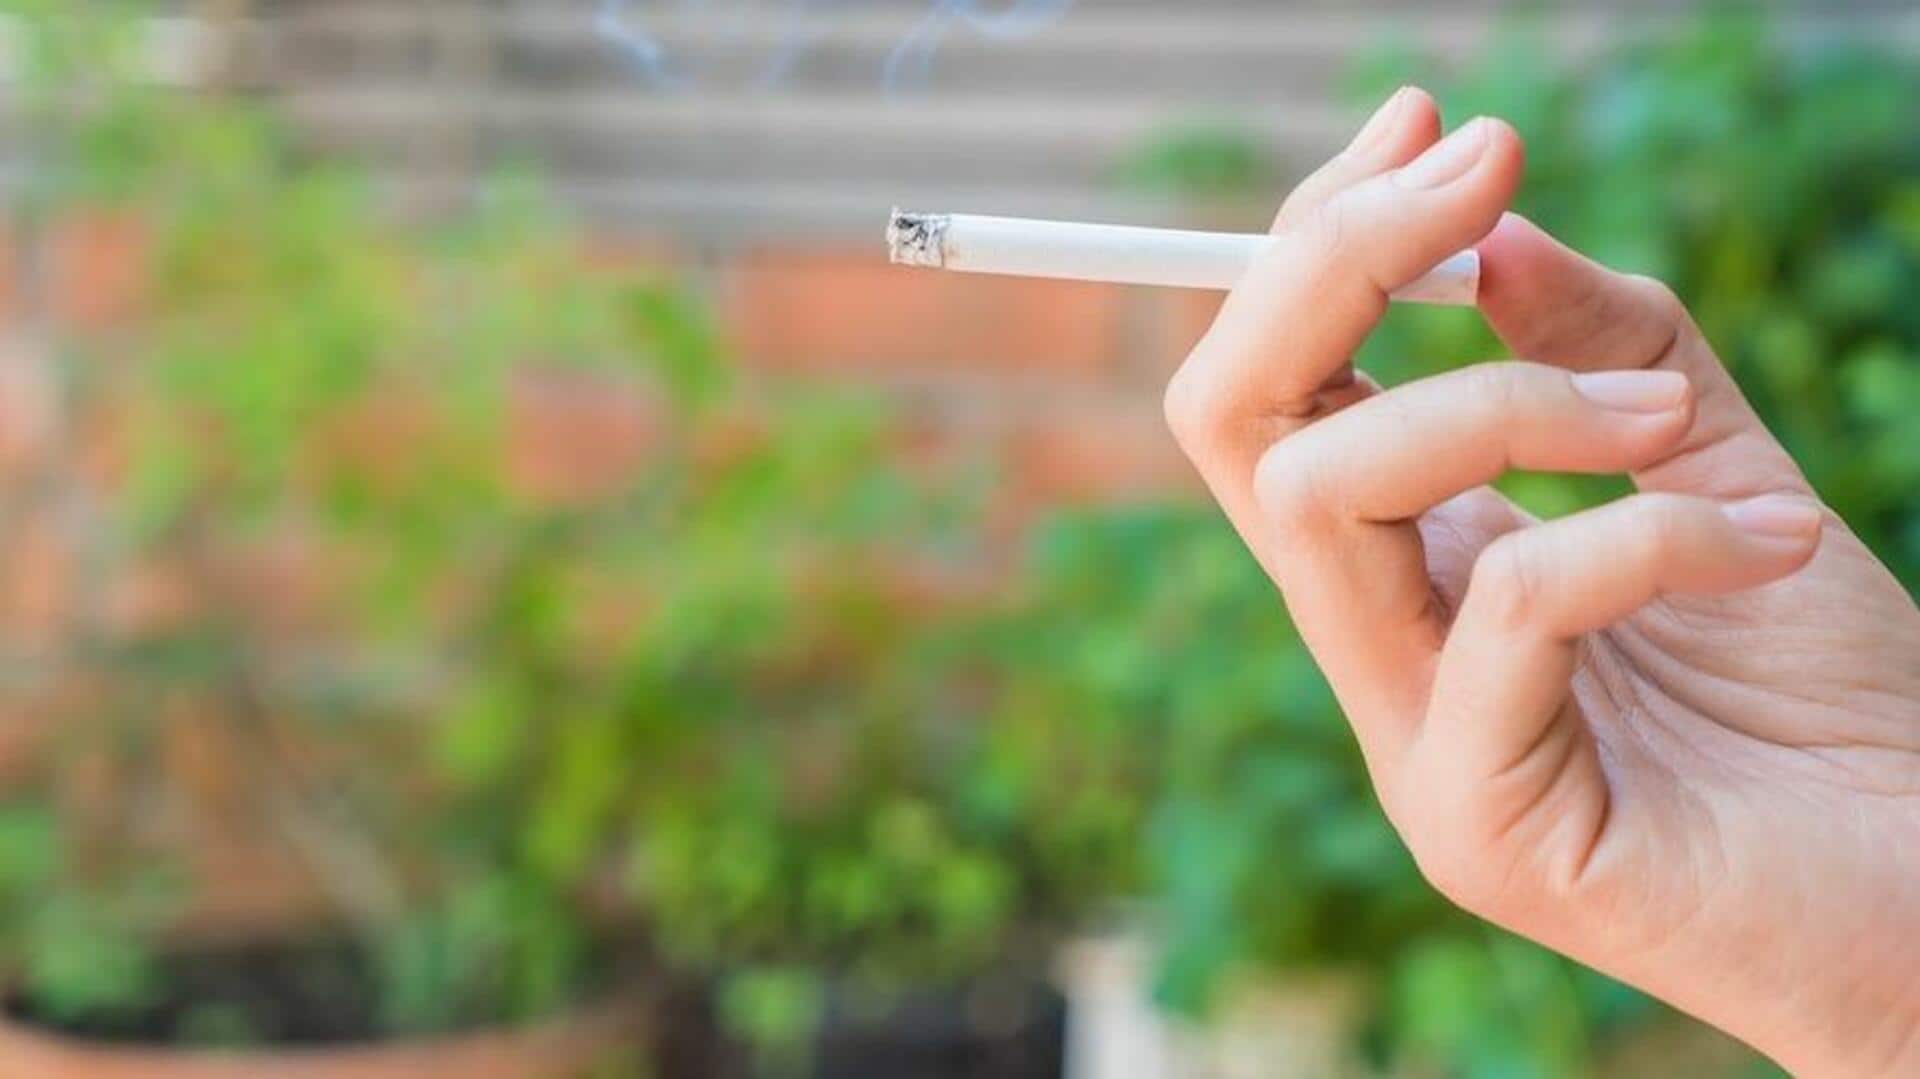 जापान: सिगरेट पीने के लिए ऑफिस टाइम में लिए 4,512 ब्रेक, लगा लाखों का जुर्माना 